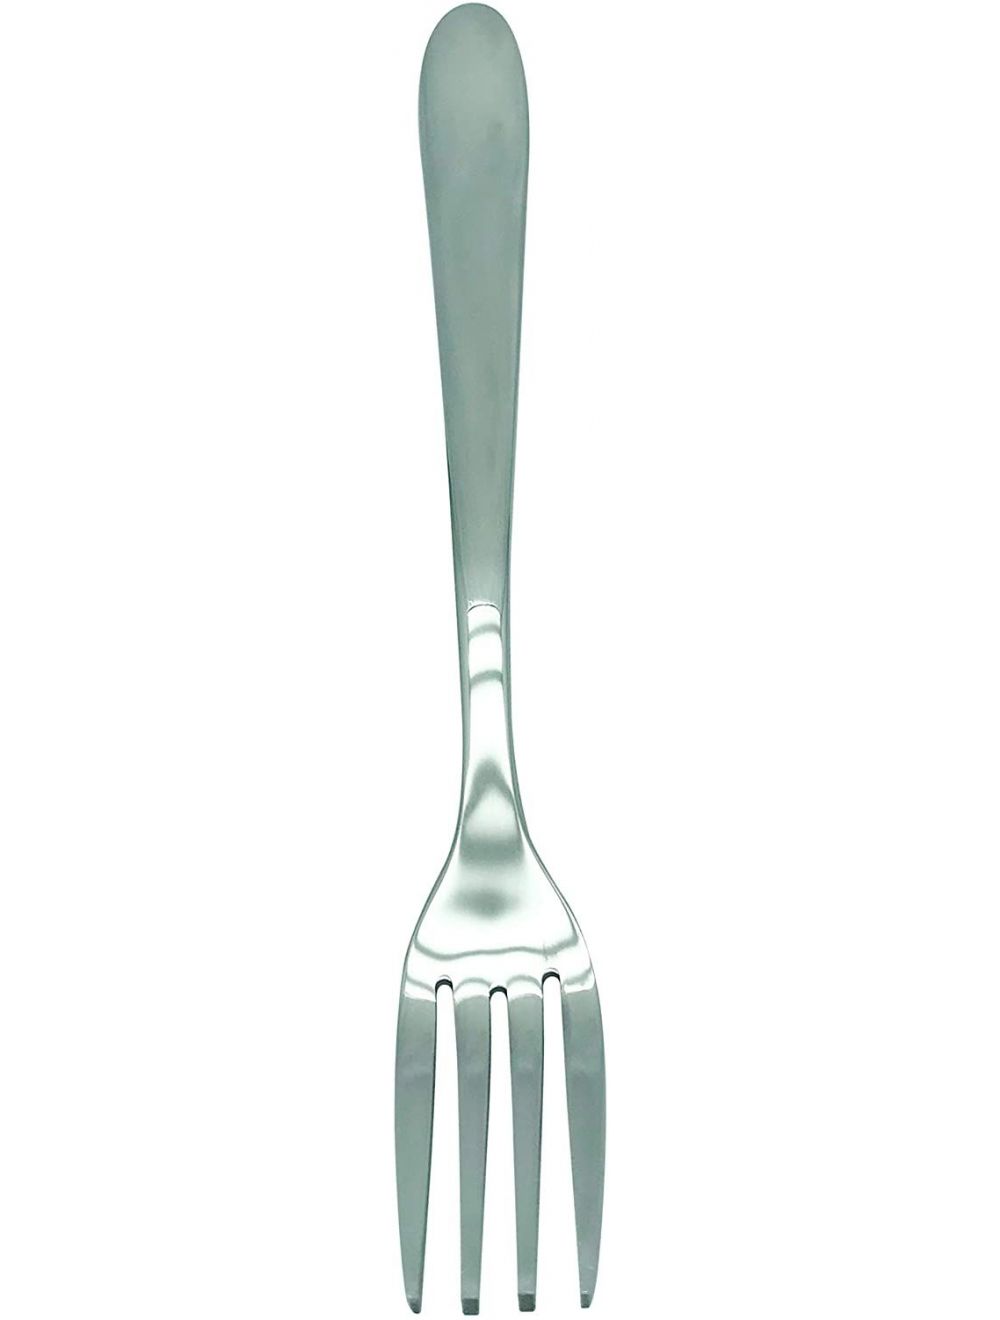 Raj Cuisine Desert Fork 6pc Set, Silver, PC0011